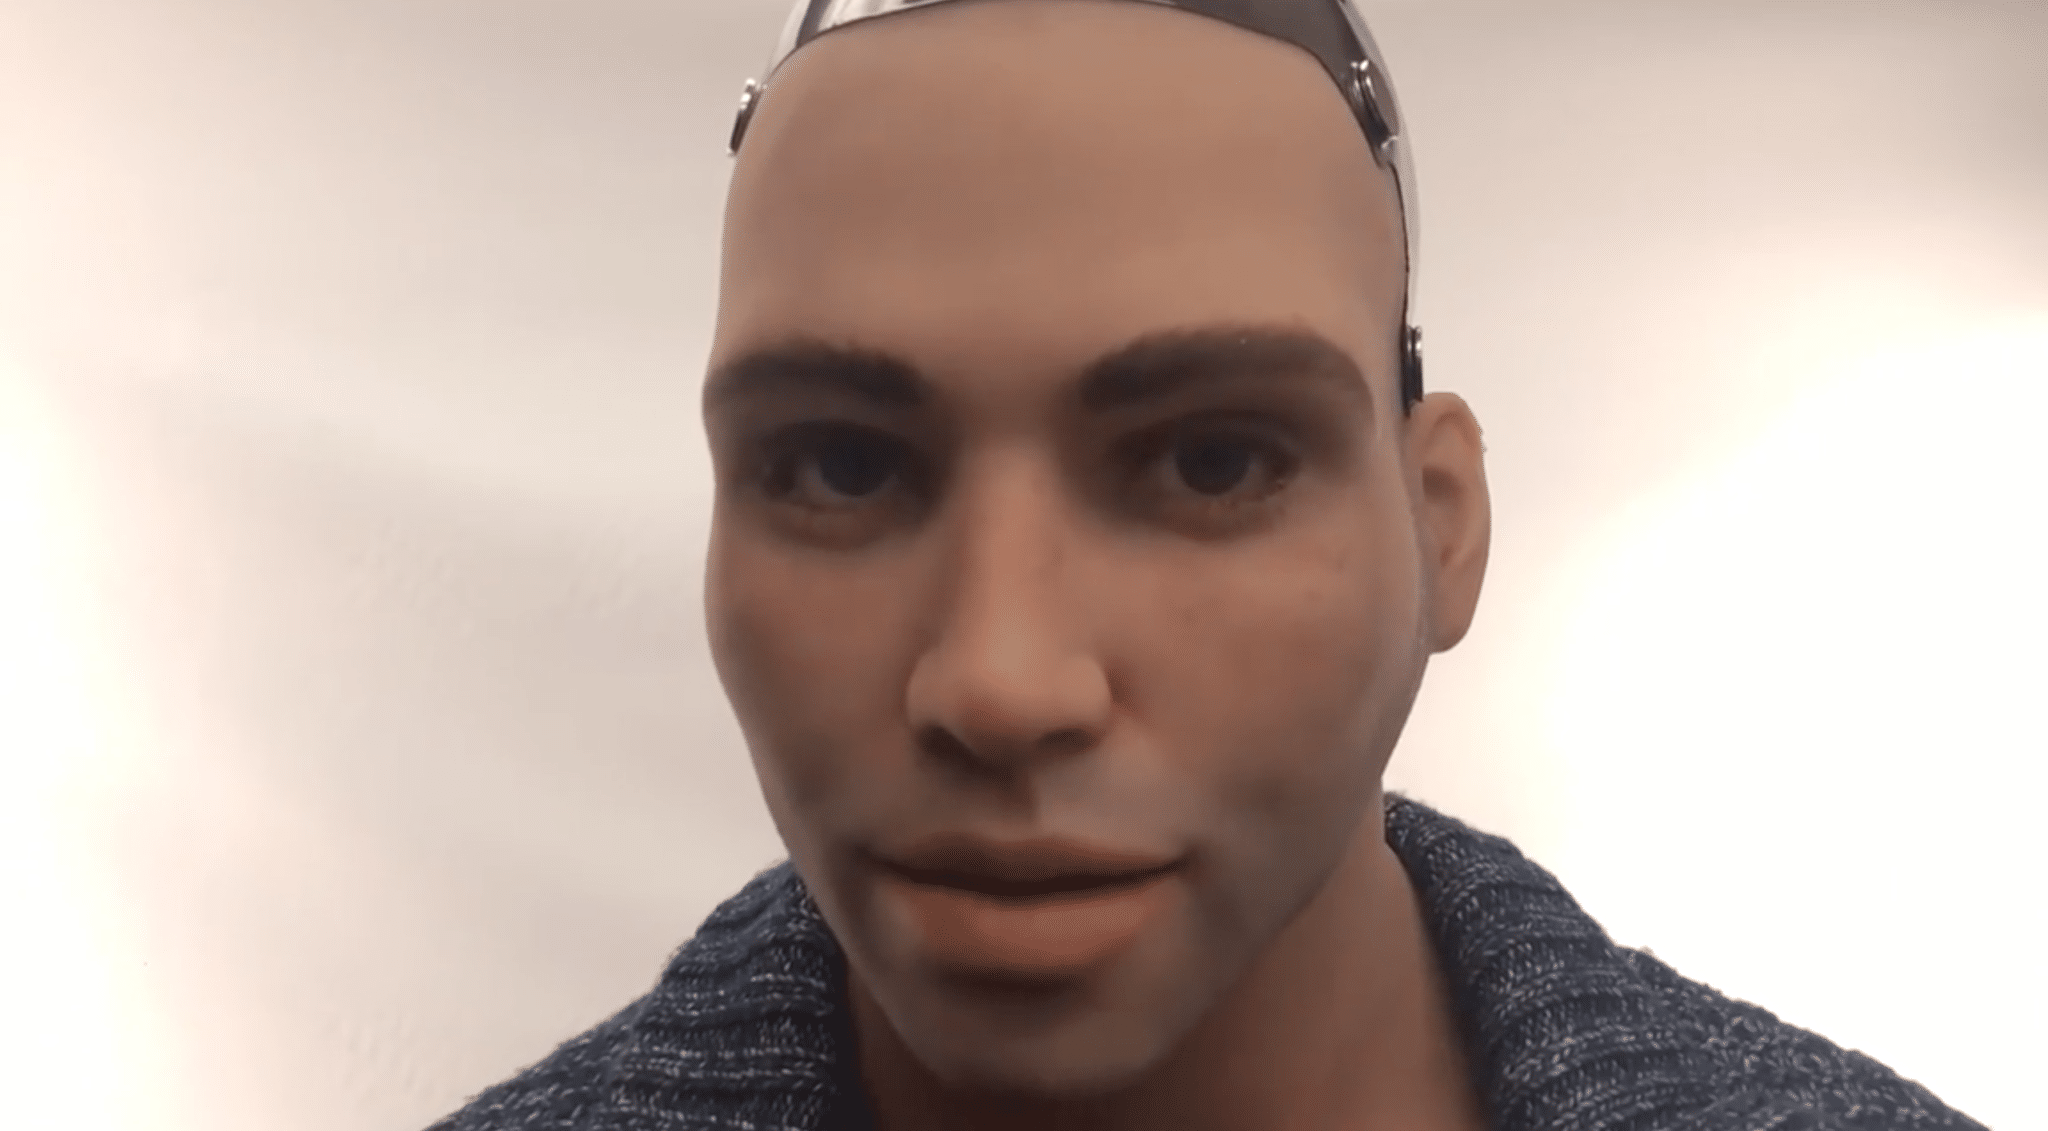 brendon dejito recommends male sex robot videos pic